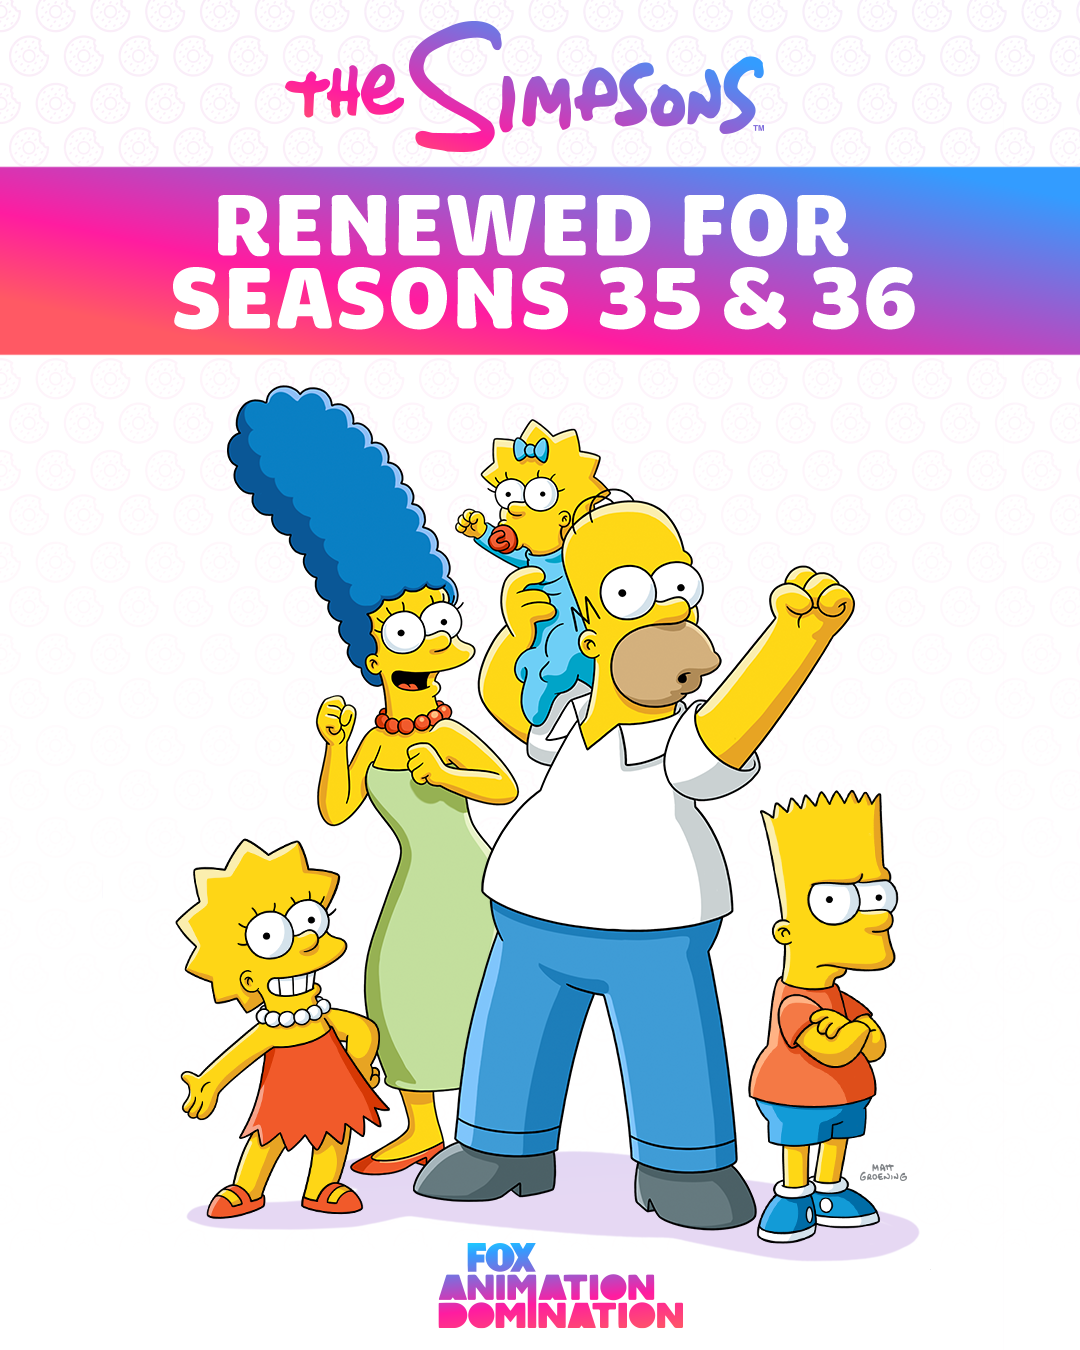 Fox бьет рекорды: культовый сериал "Симпсоны" продлили еще на два сезона - фото №1